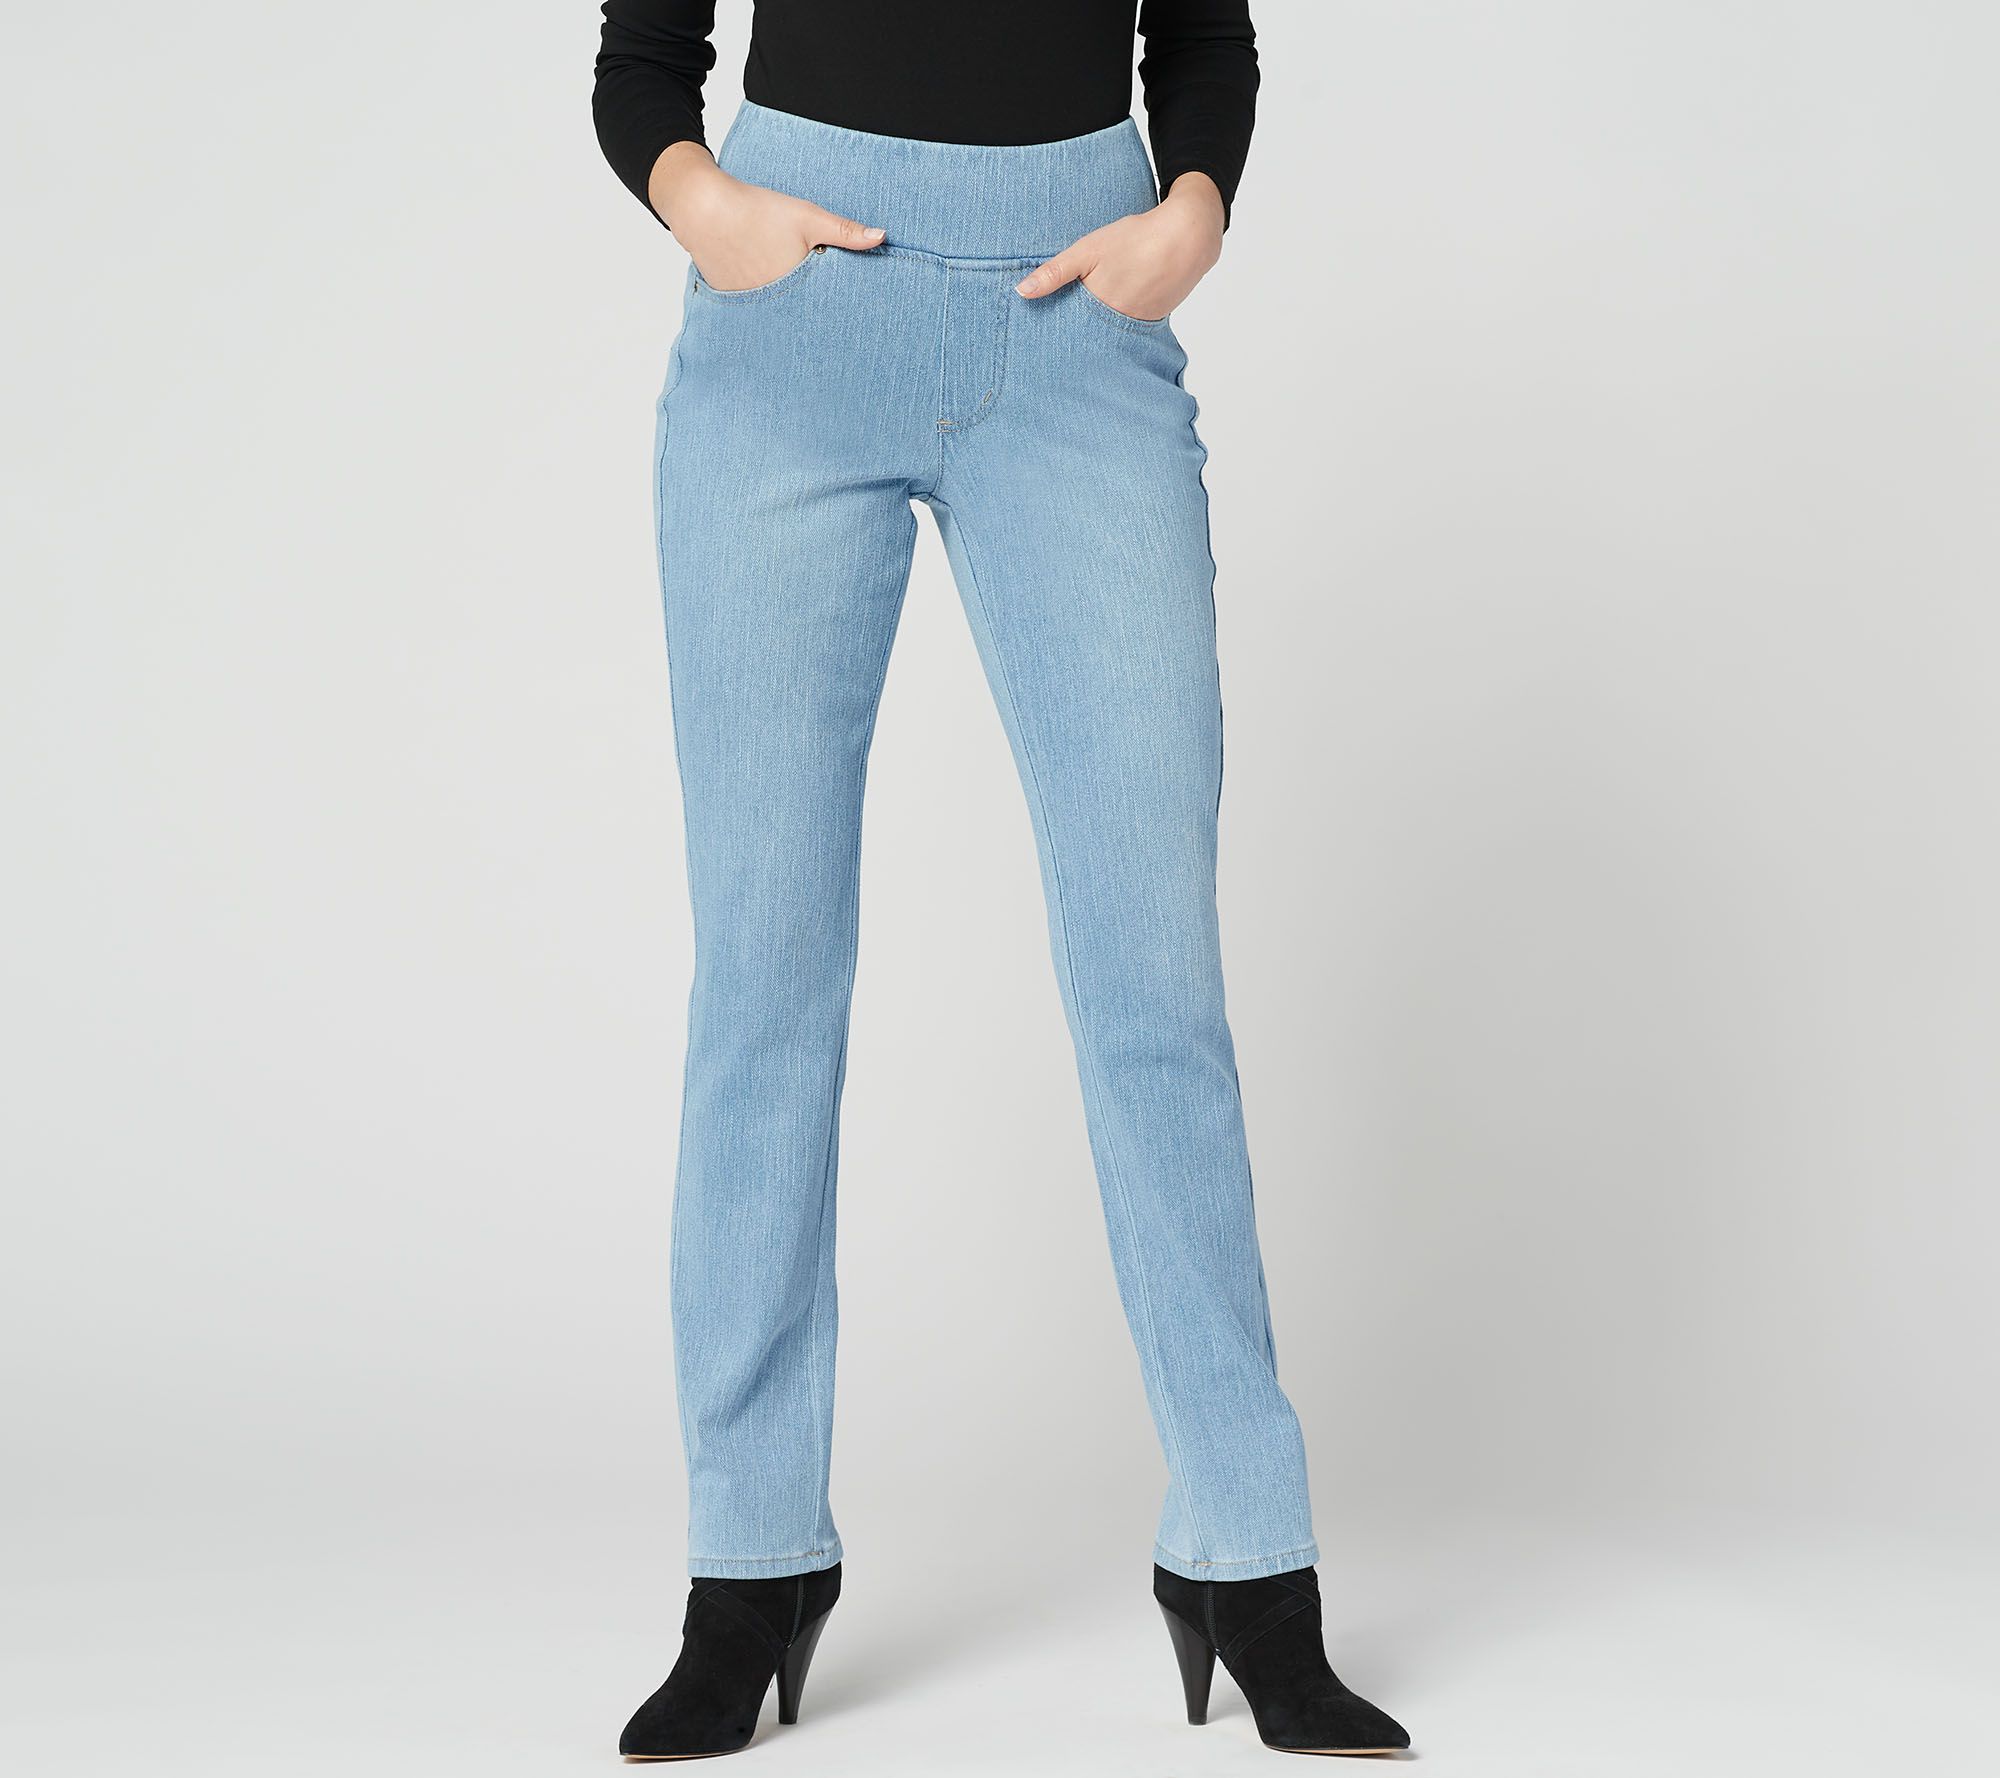 flexibelle jeans qvc